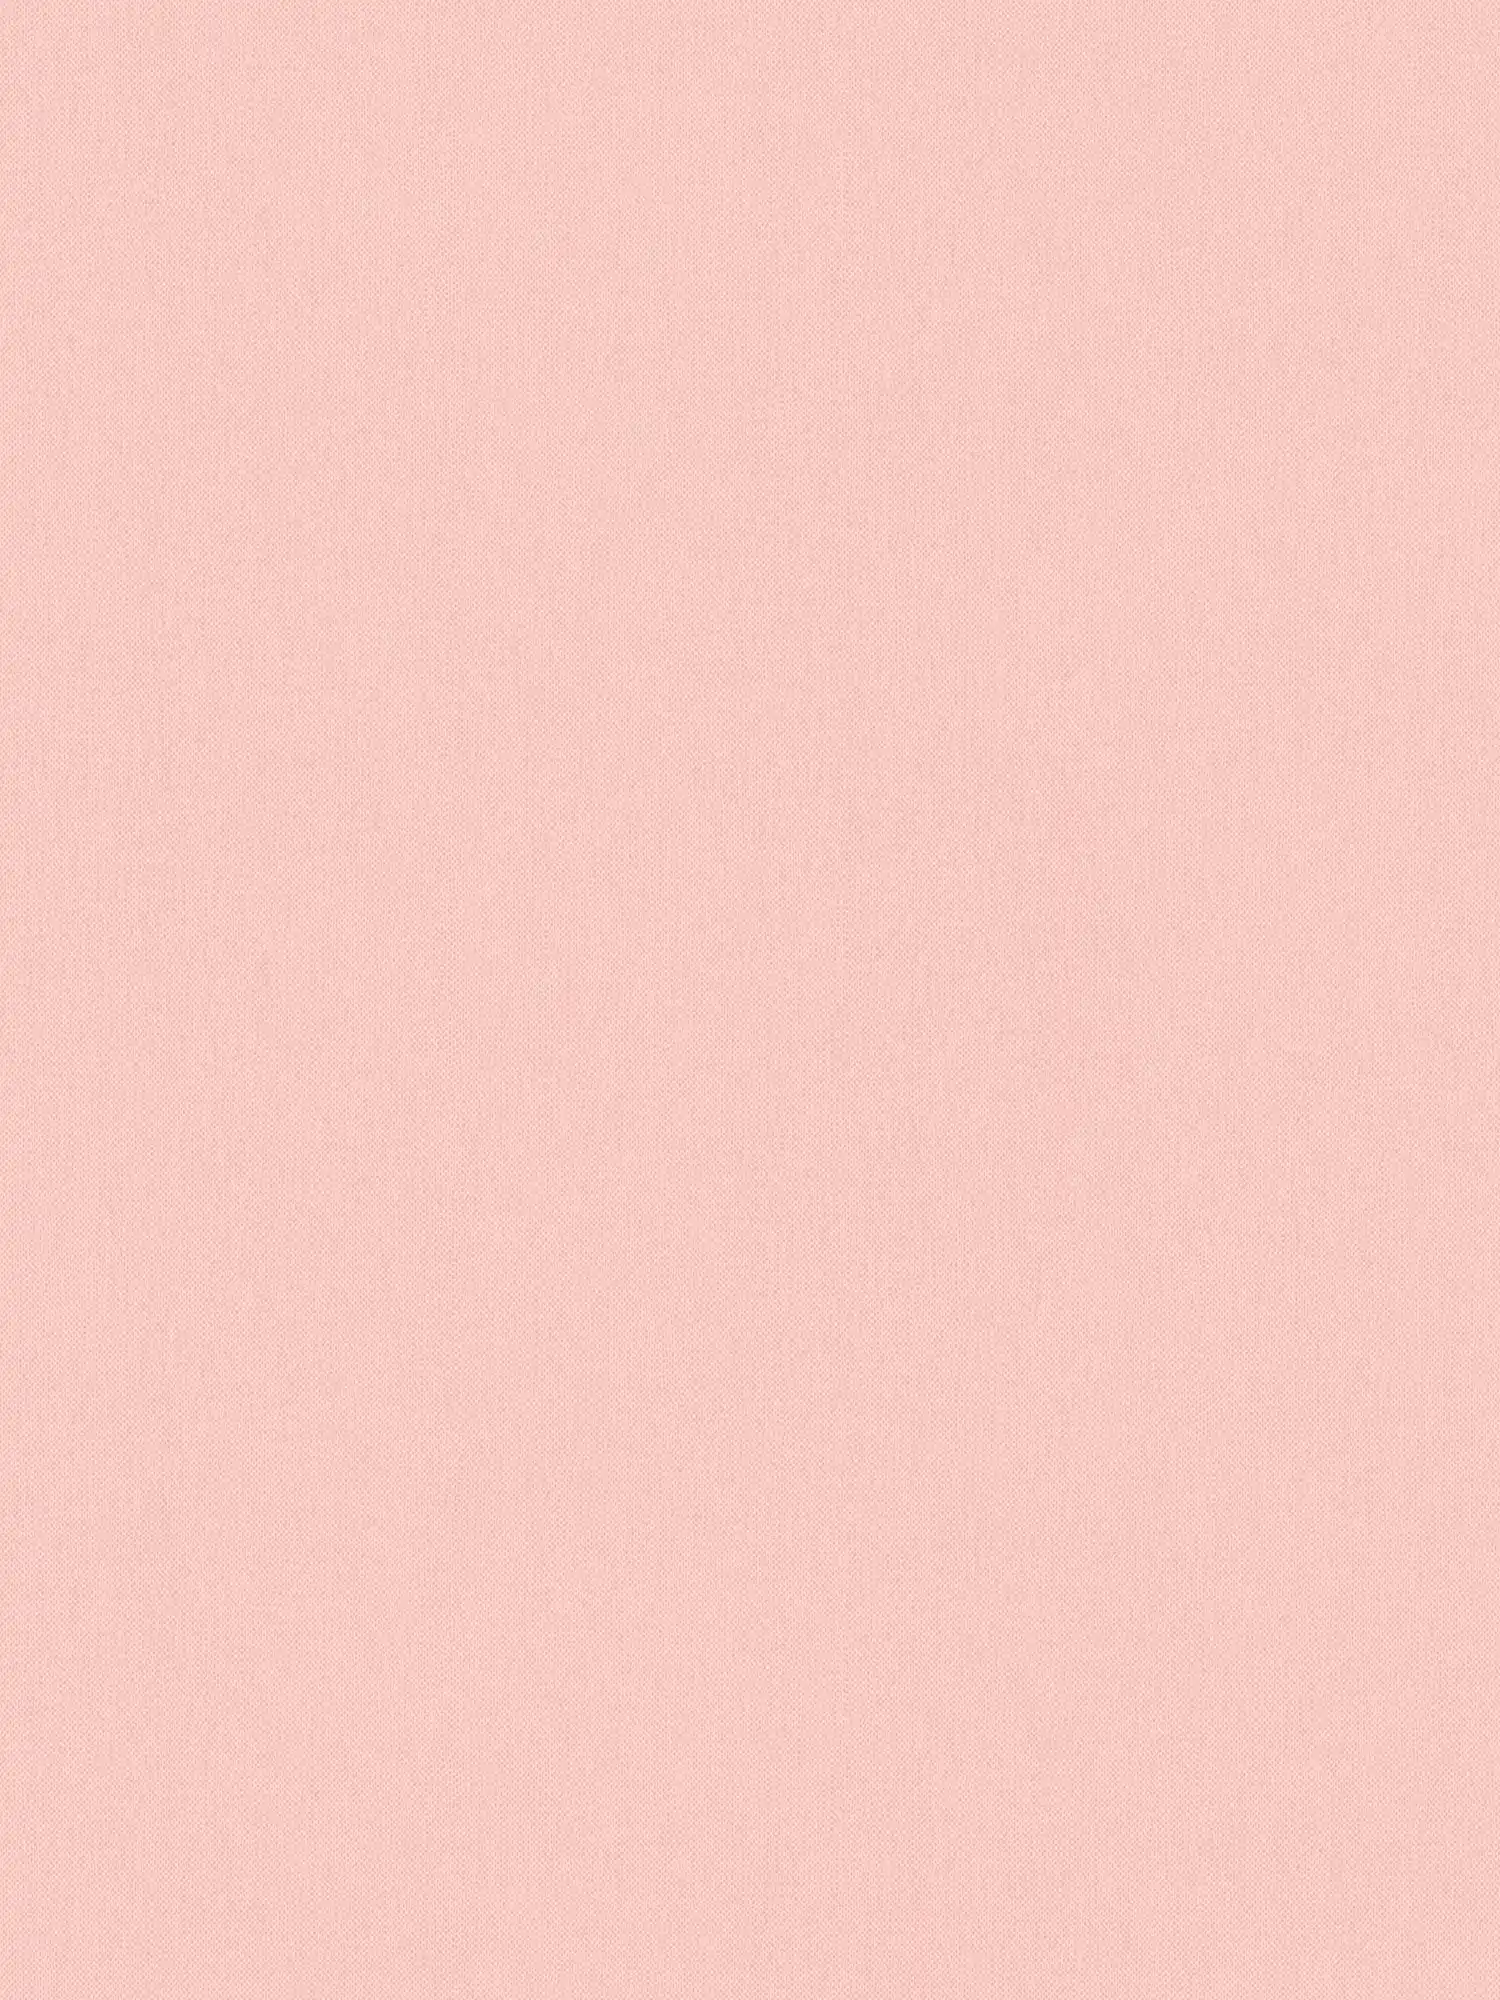 Carta da parati rosa pastello con struttura in lino e aspetto tessile - rosa
